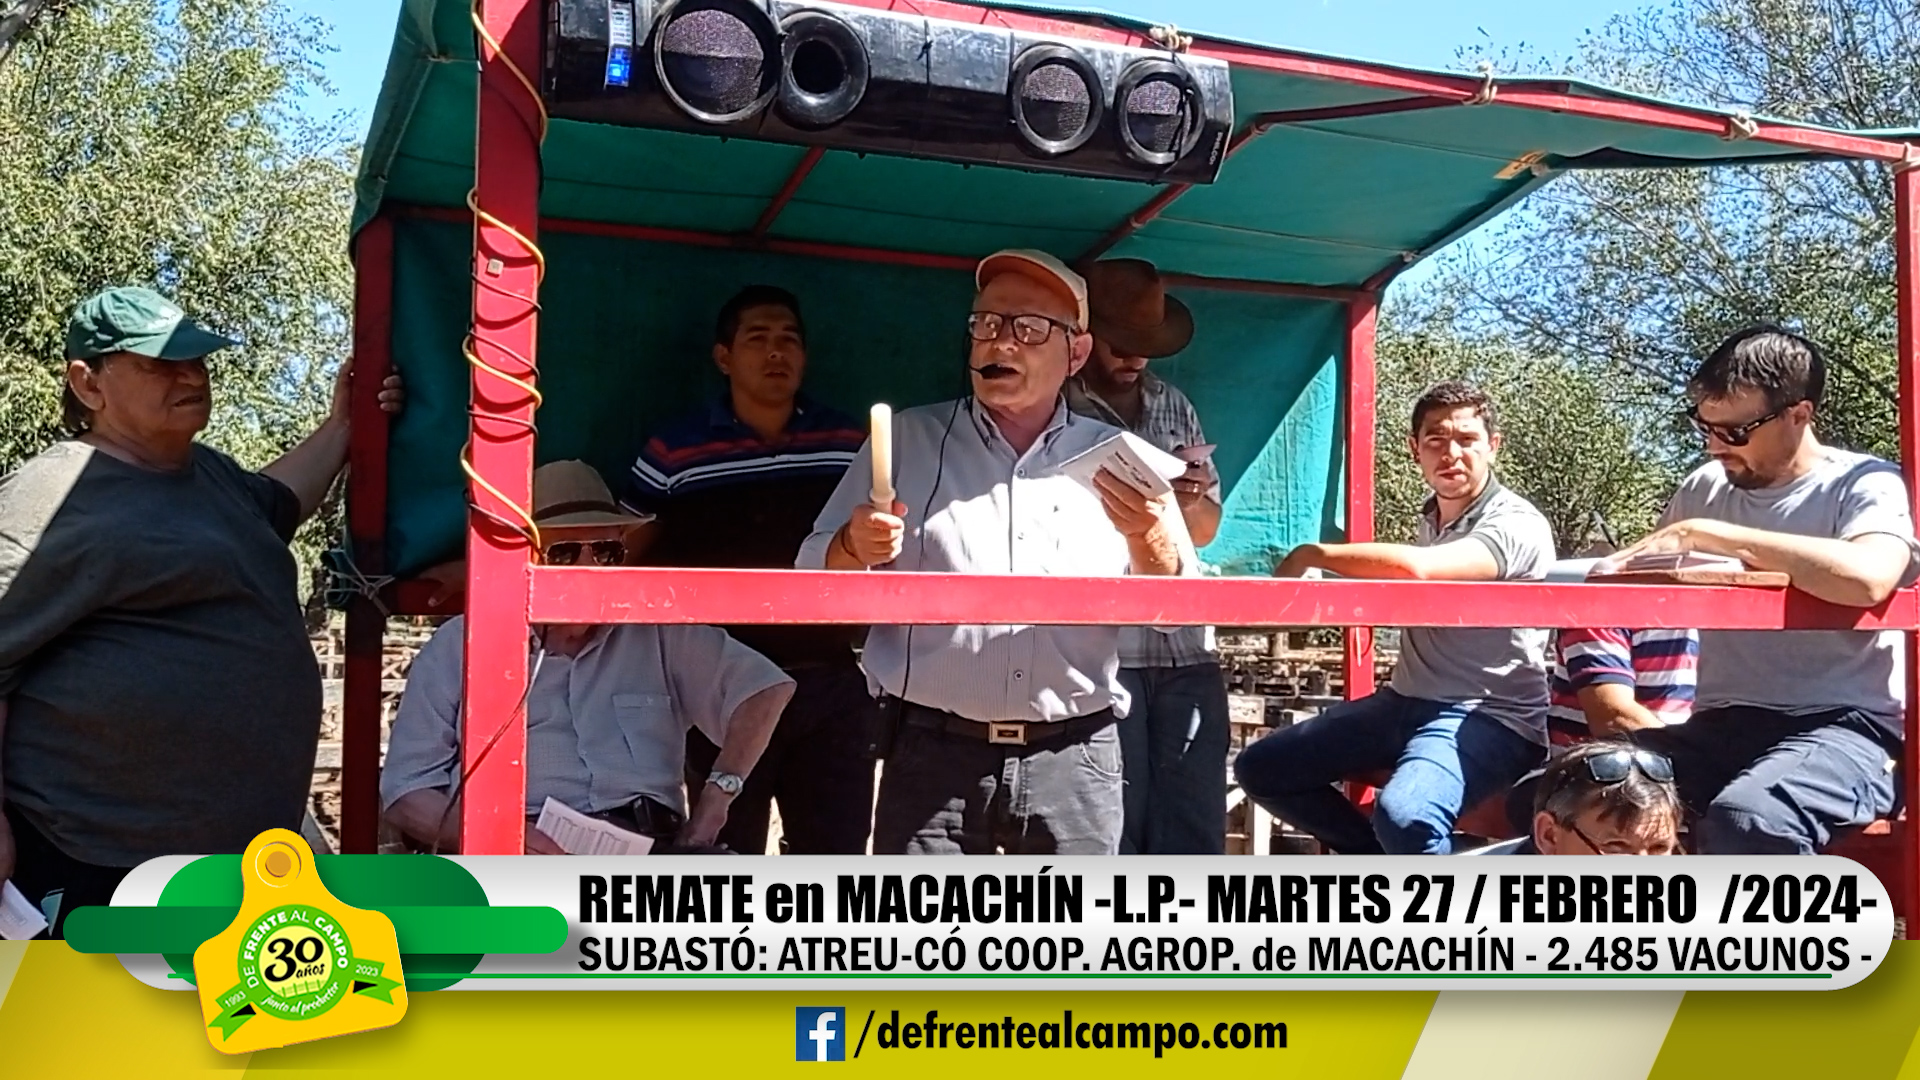 Remate Feria de Atreu-Có Coop. Agrop. – Macachín -L.P.- | 27-03-2024